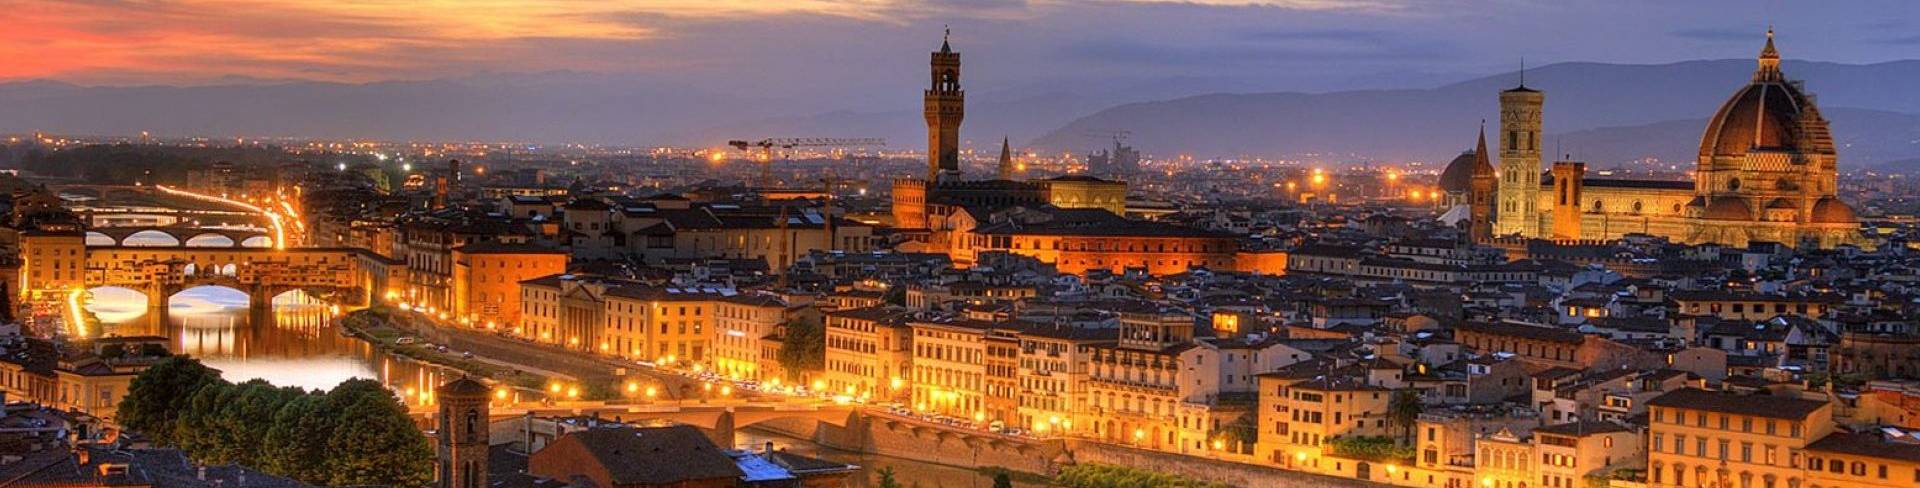 Флоренция - город в Италии